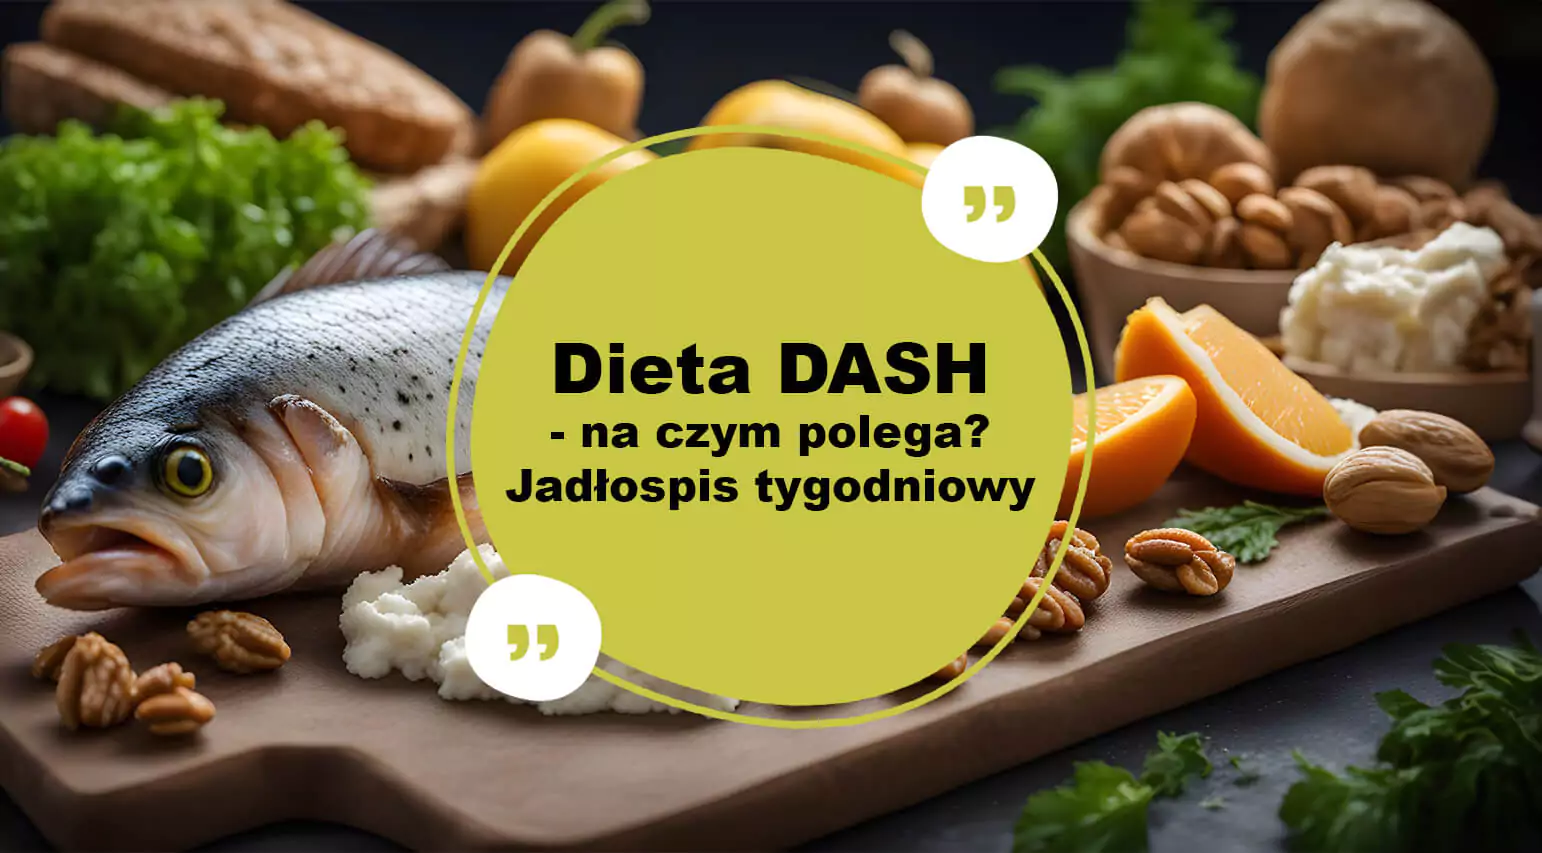 dieta DASH - zasady, zalety i wady, jadłospis tygodniowy